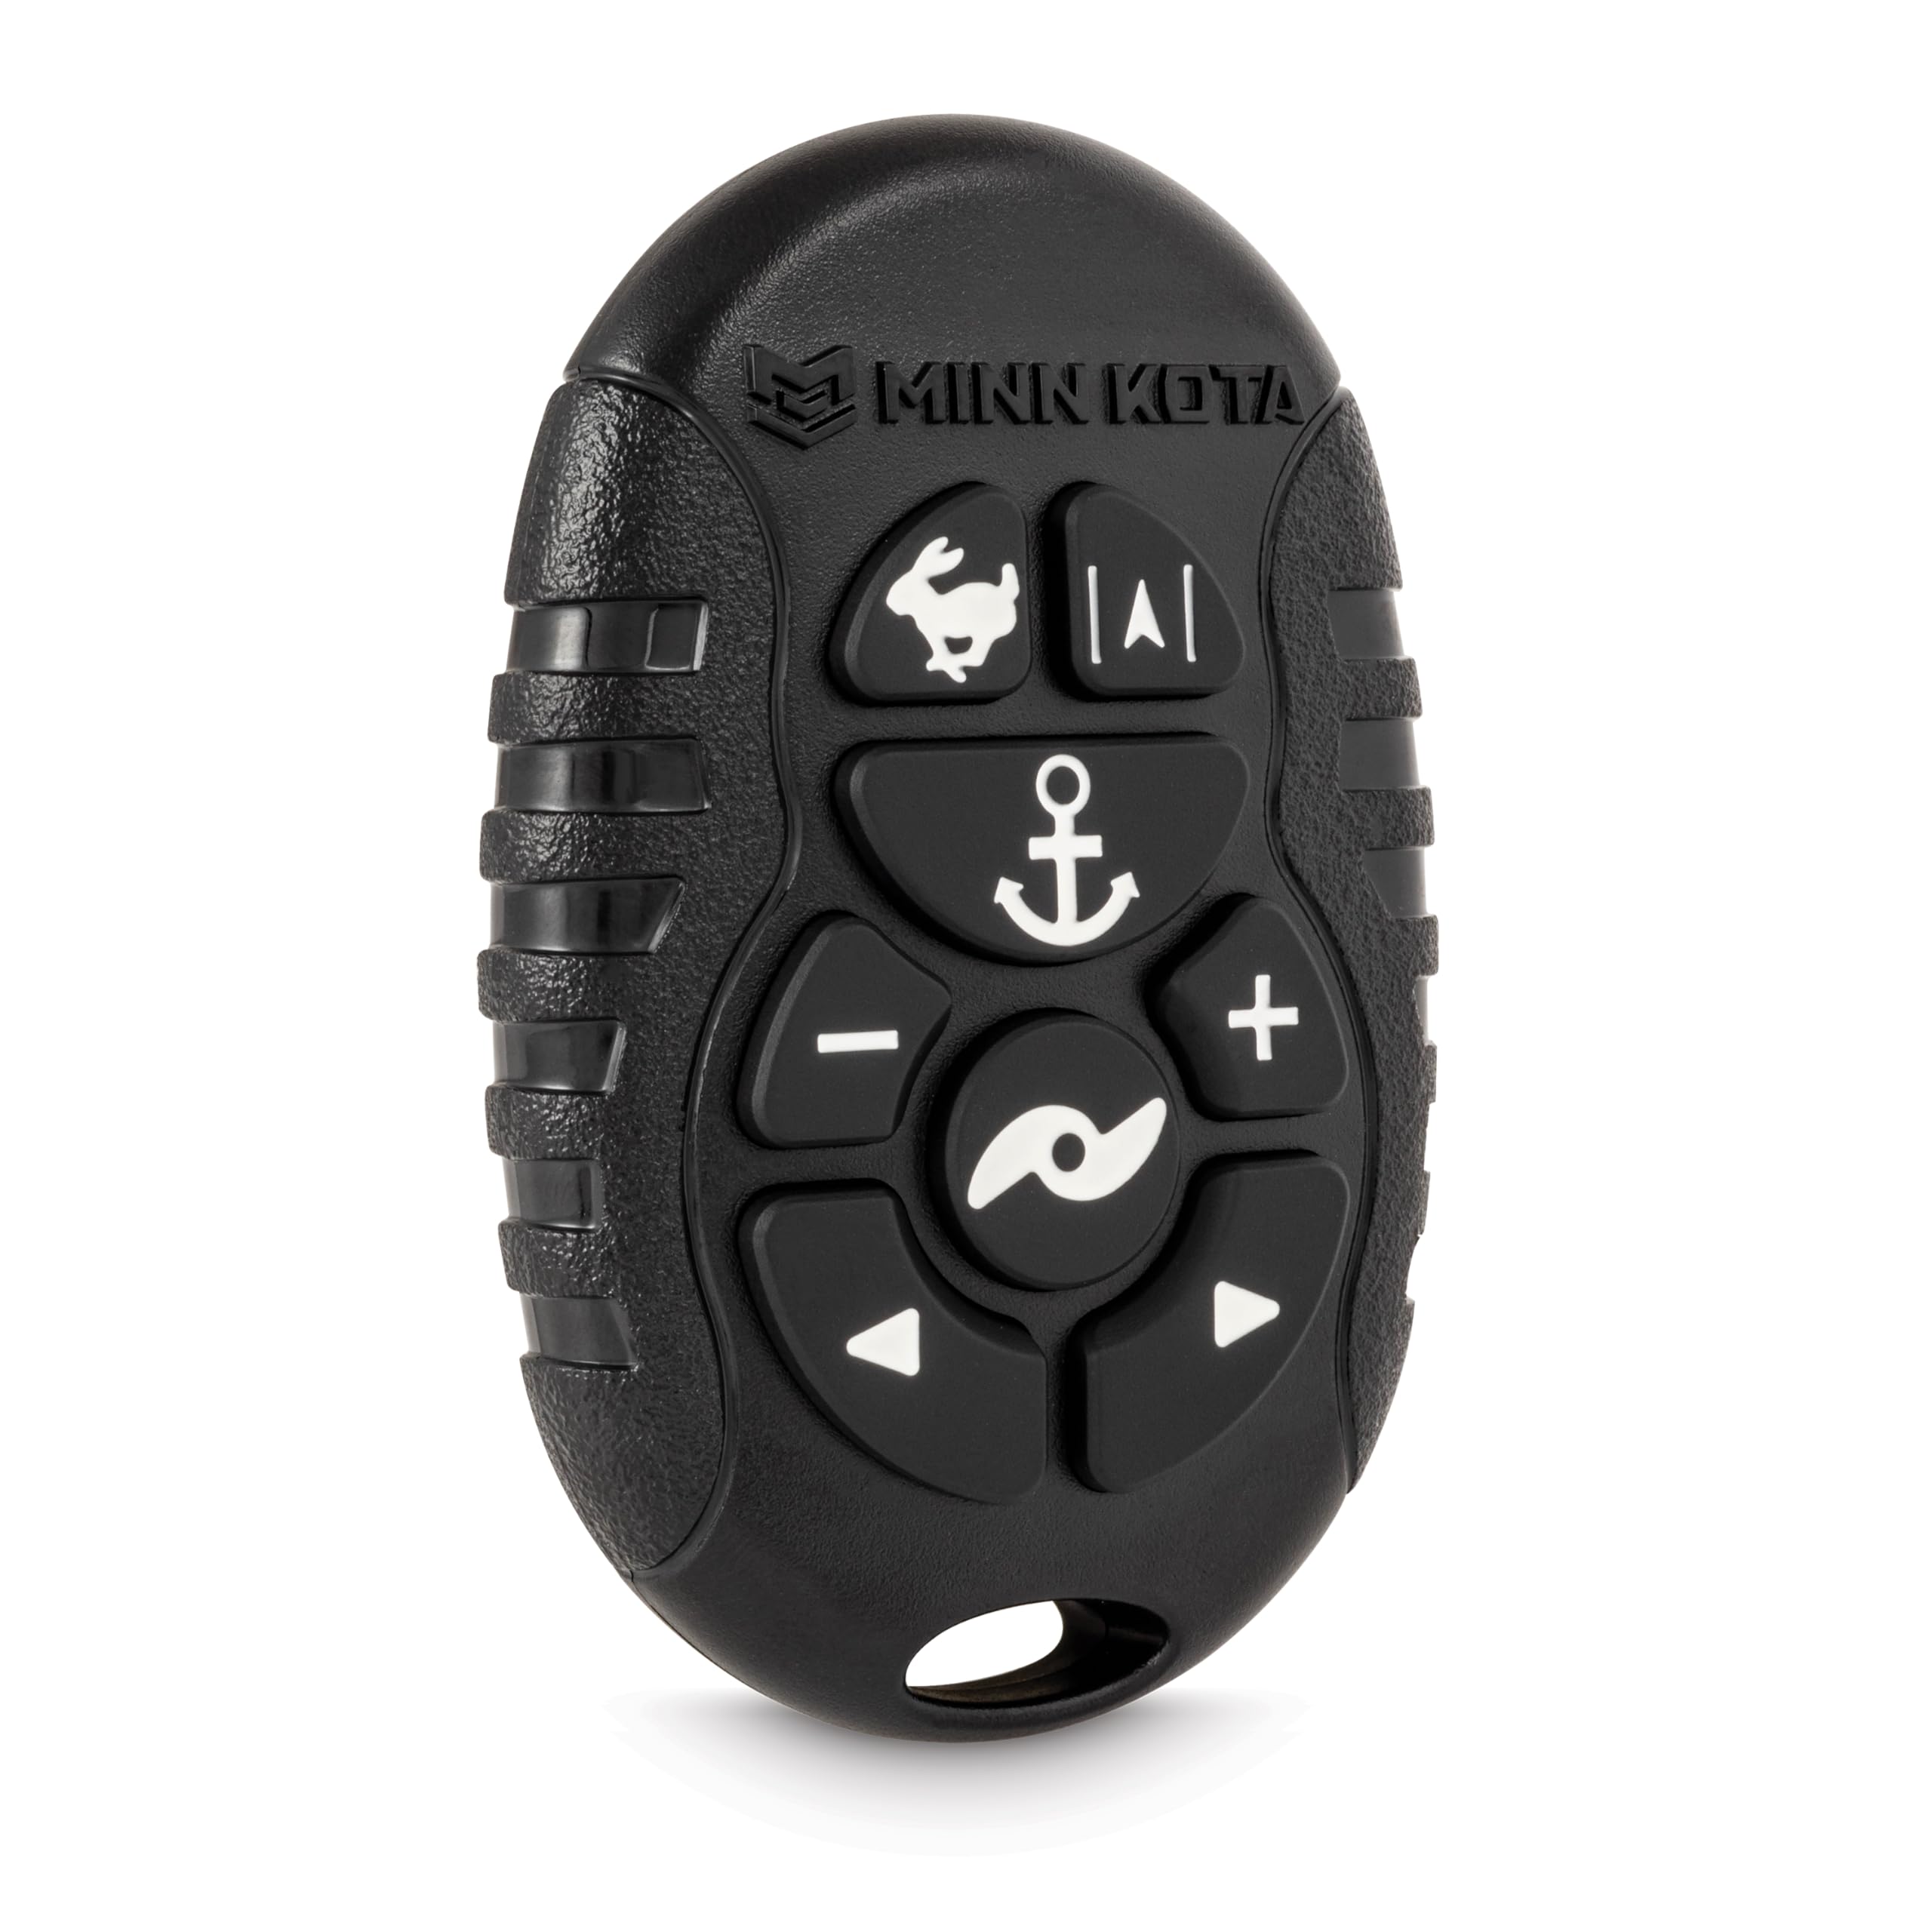 Minn Kota 1866561 Micro Remote-Bluetooth